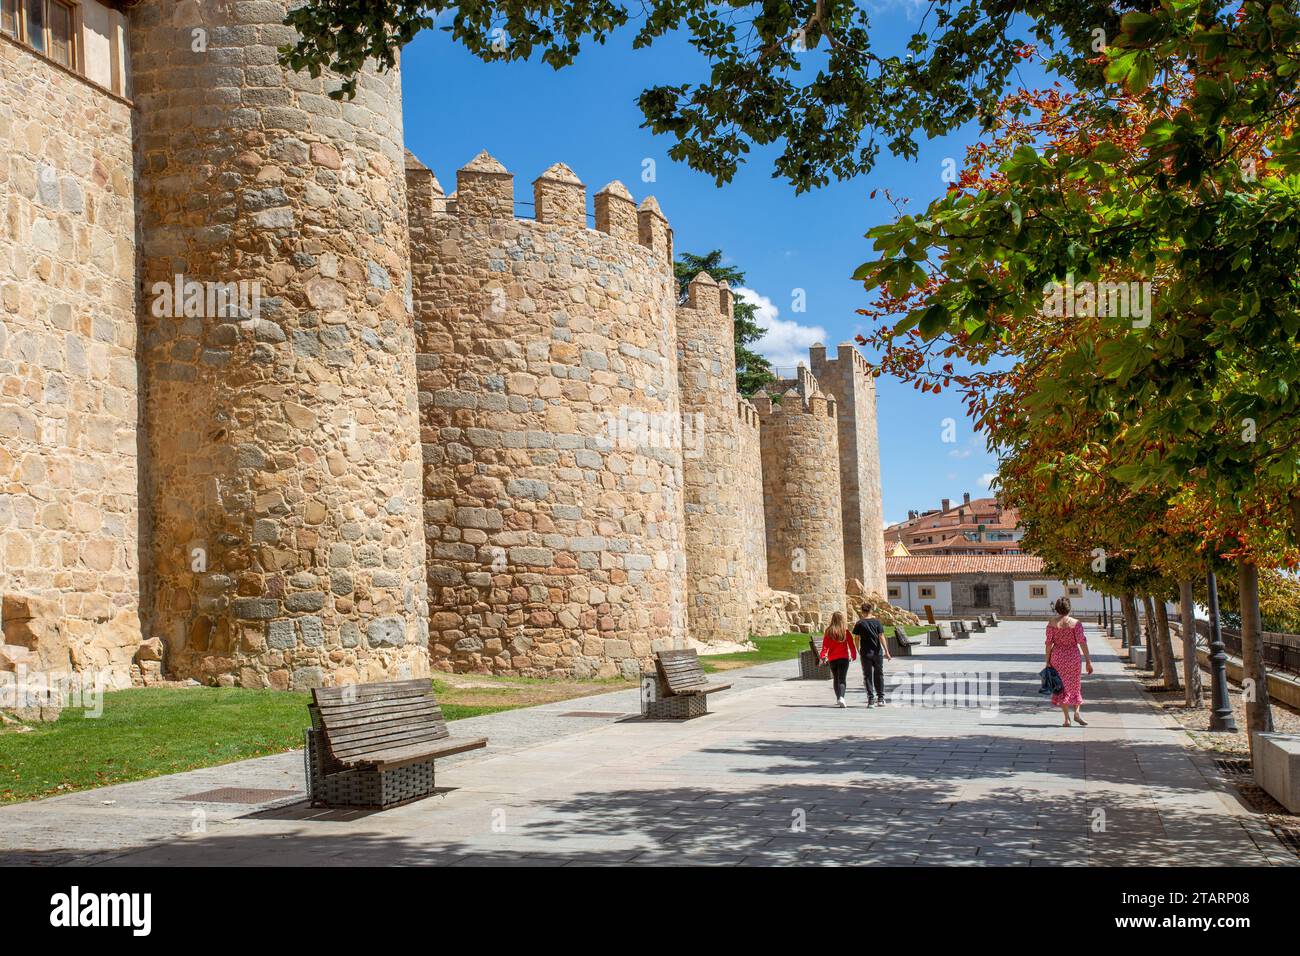 Gente che cammina accanto ai bastioni delle mura fortificate della città fortificata spagnola di Avila, nella comunità autonoma di Castiglia e León Spagna Foto Stock